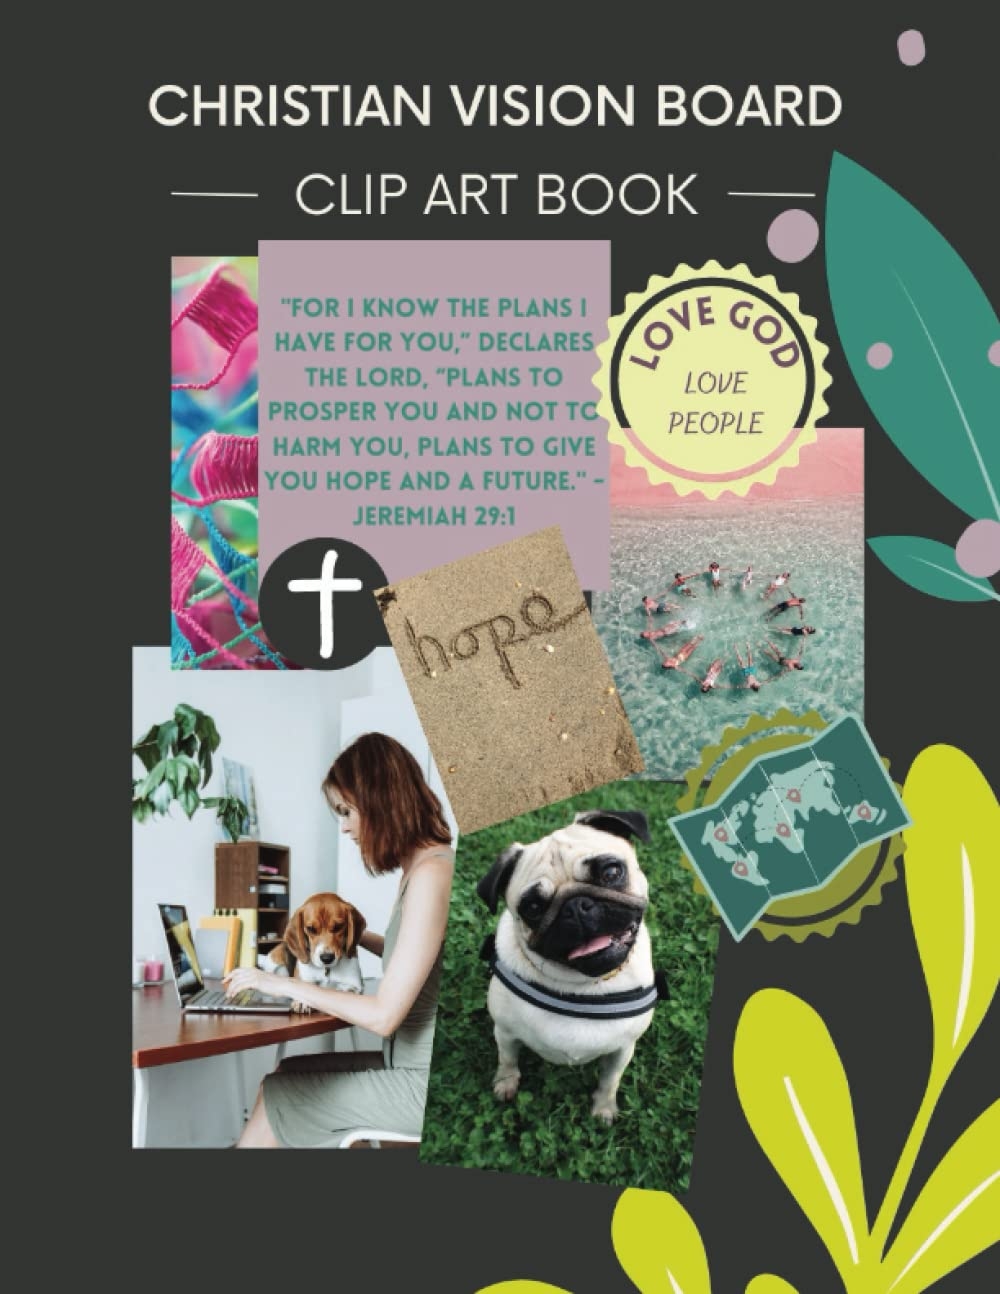 2023 vision board clip art book cover, Book cover contest